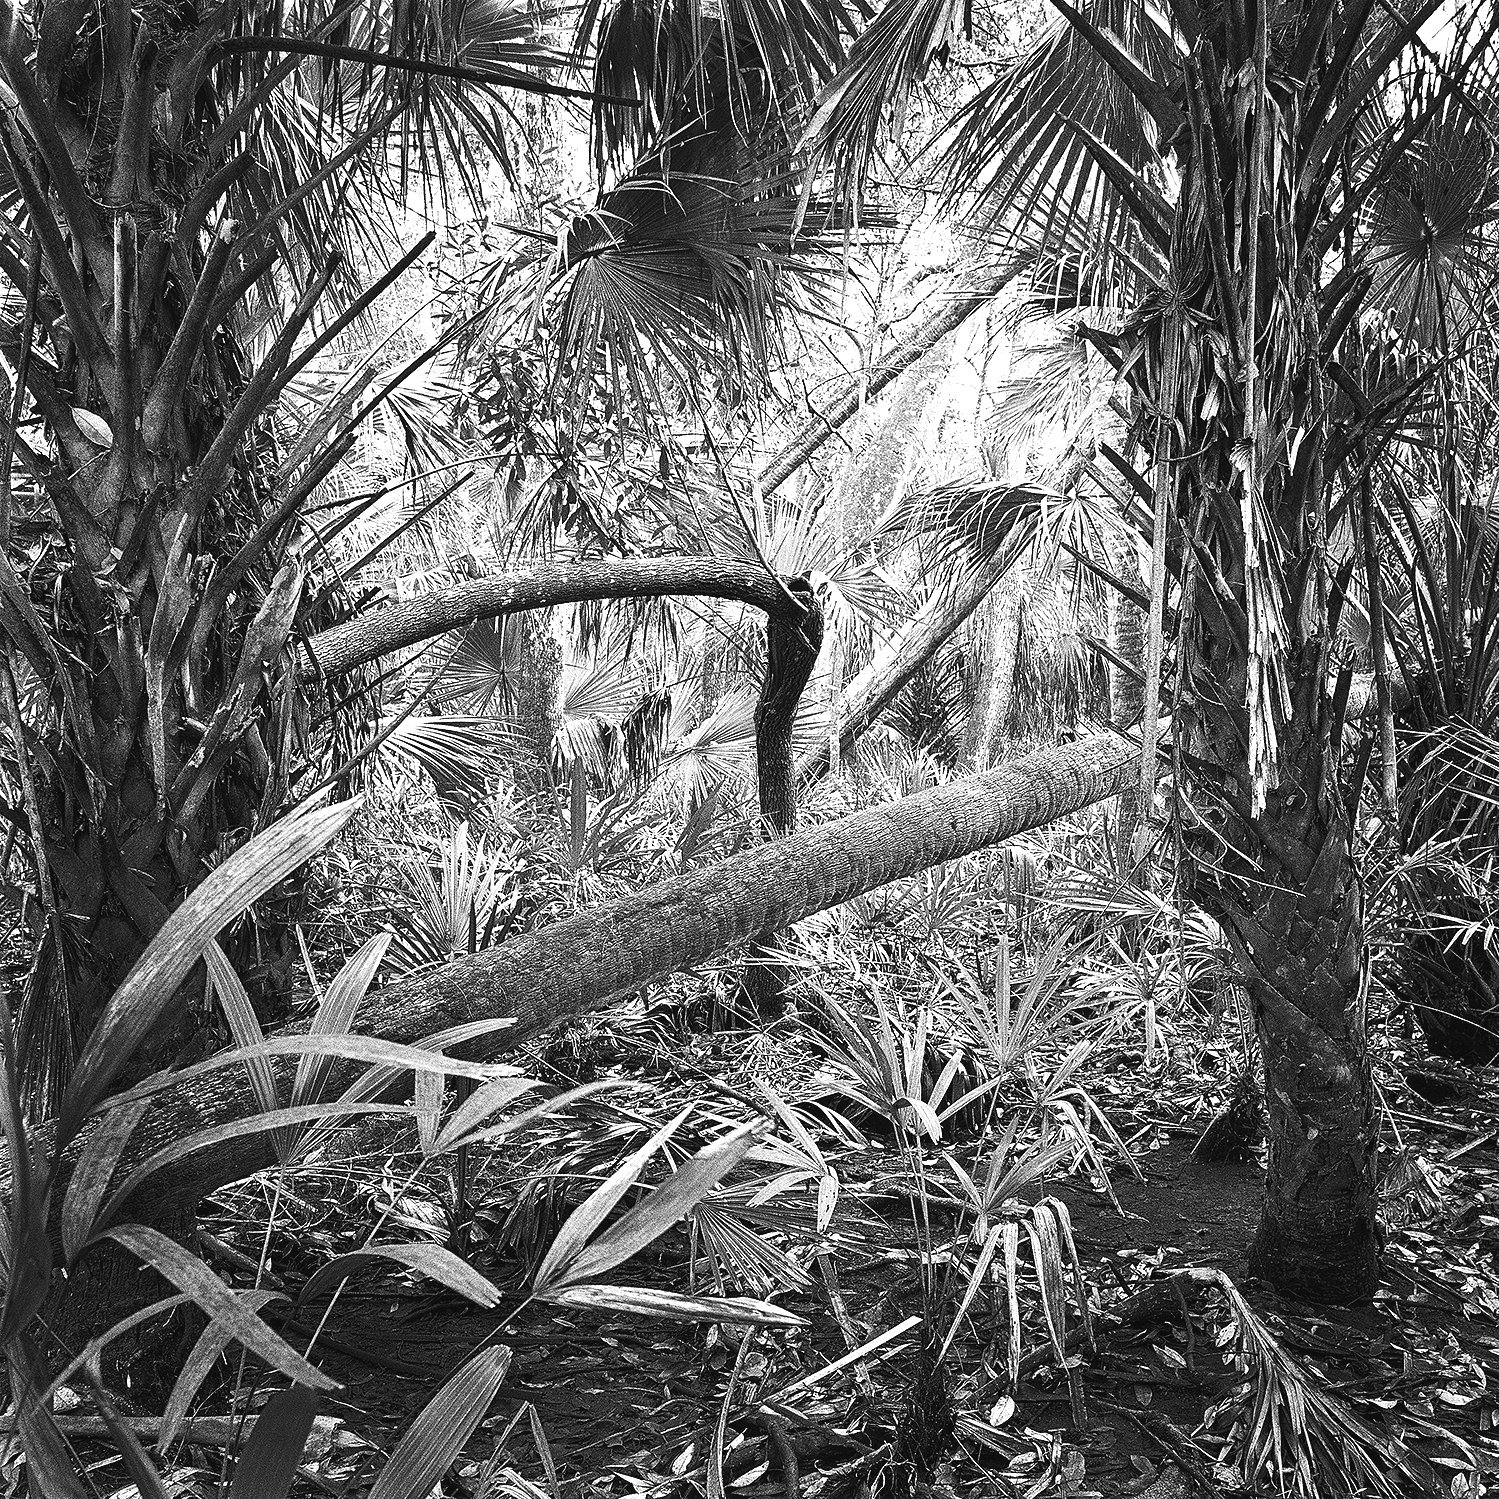 Palms & Fallen Trees, 2009